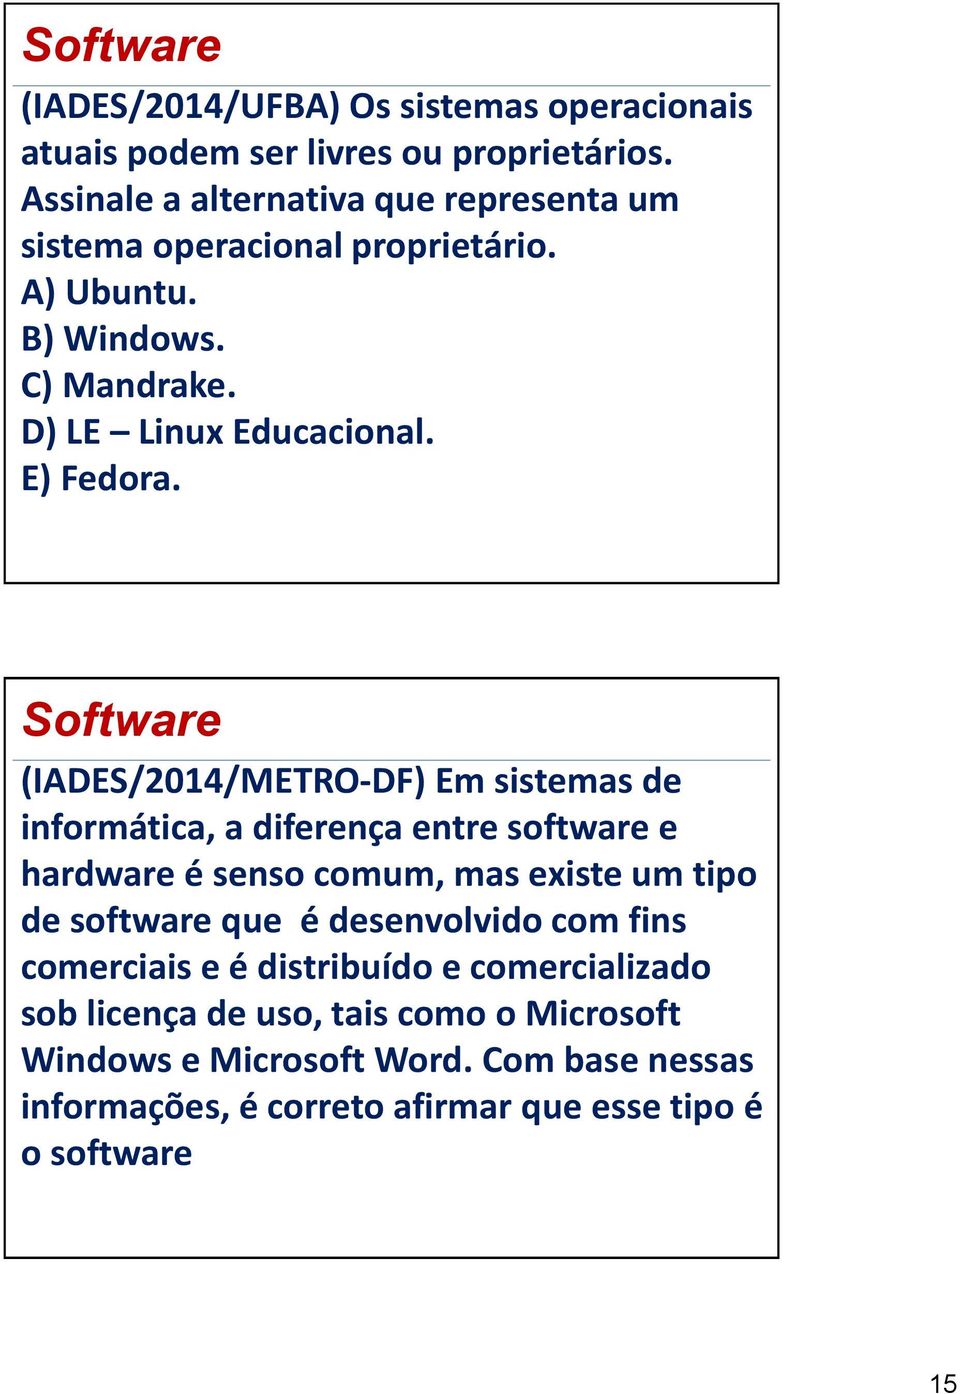 (IADES/2014/METRO-DF) Em sistemas de informática, a diferença entre software e hardware é senso comum, mas existe um tipo de software que é